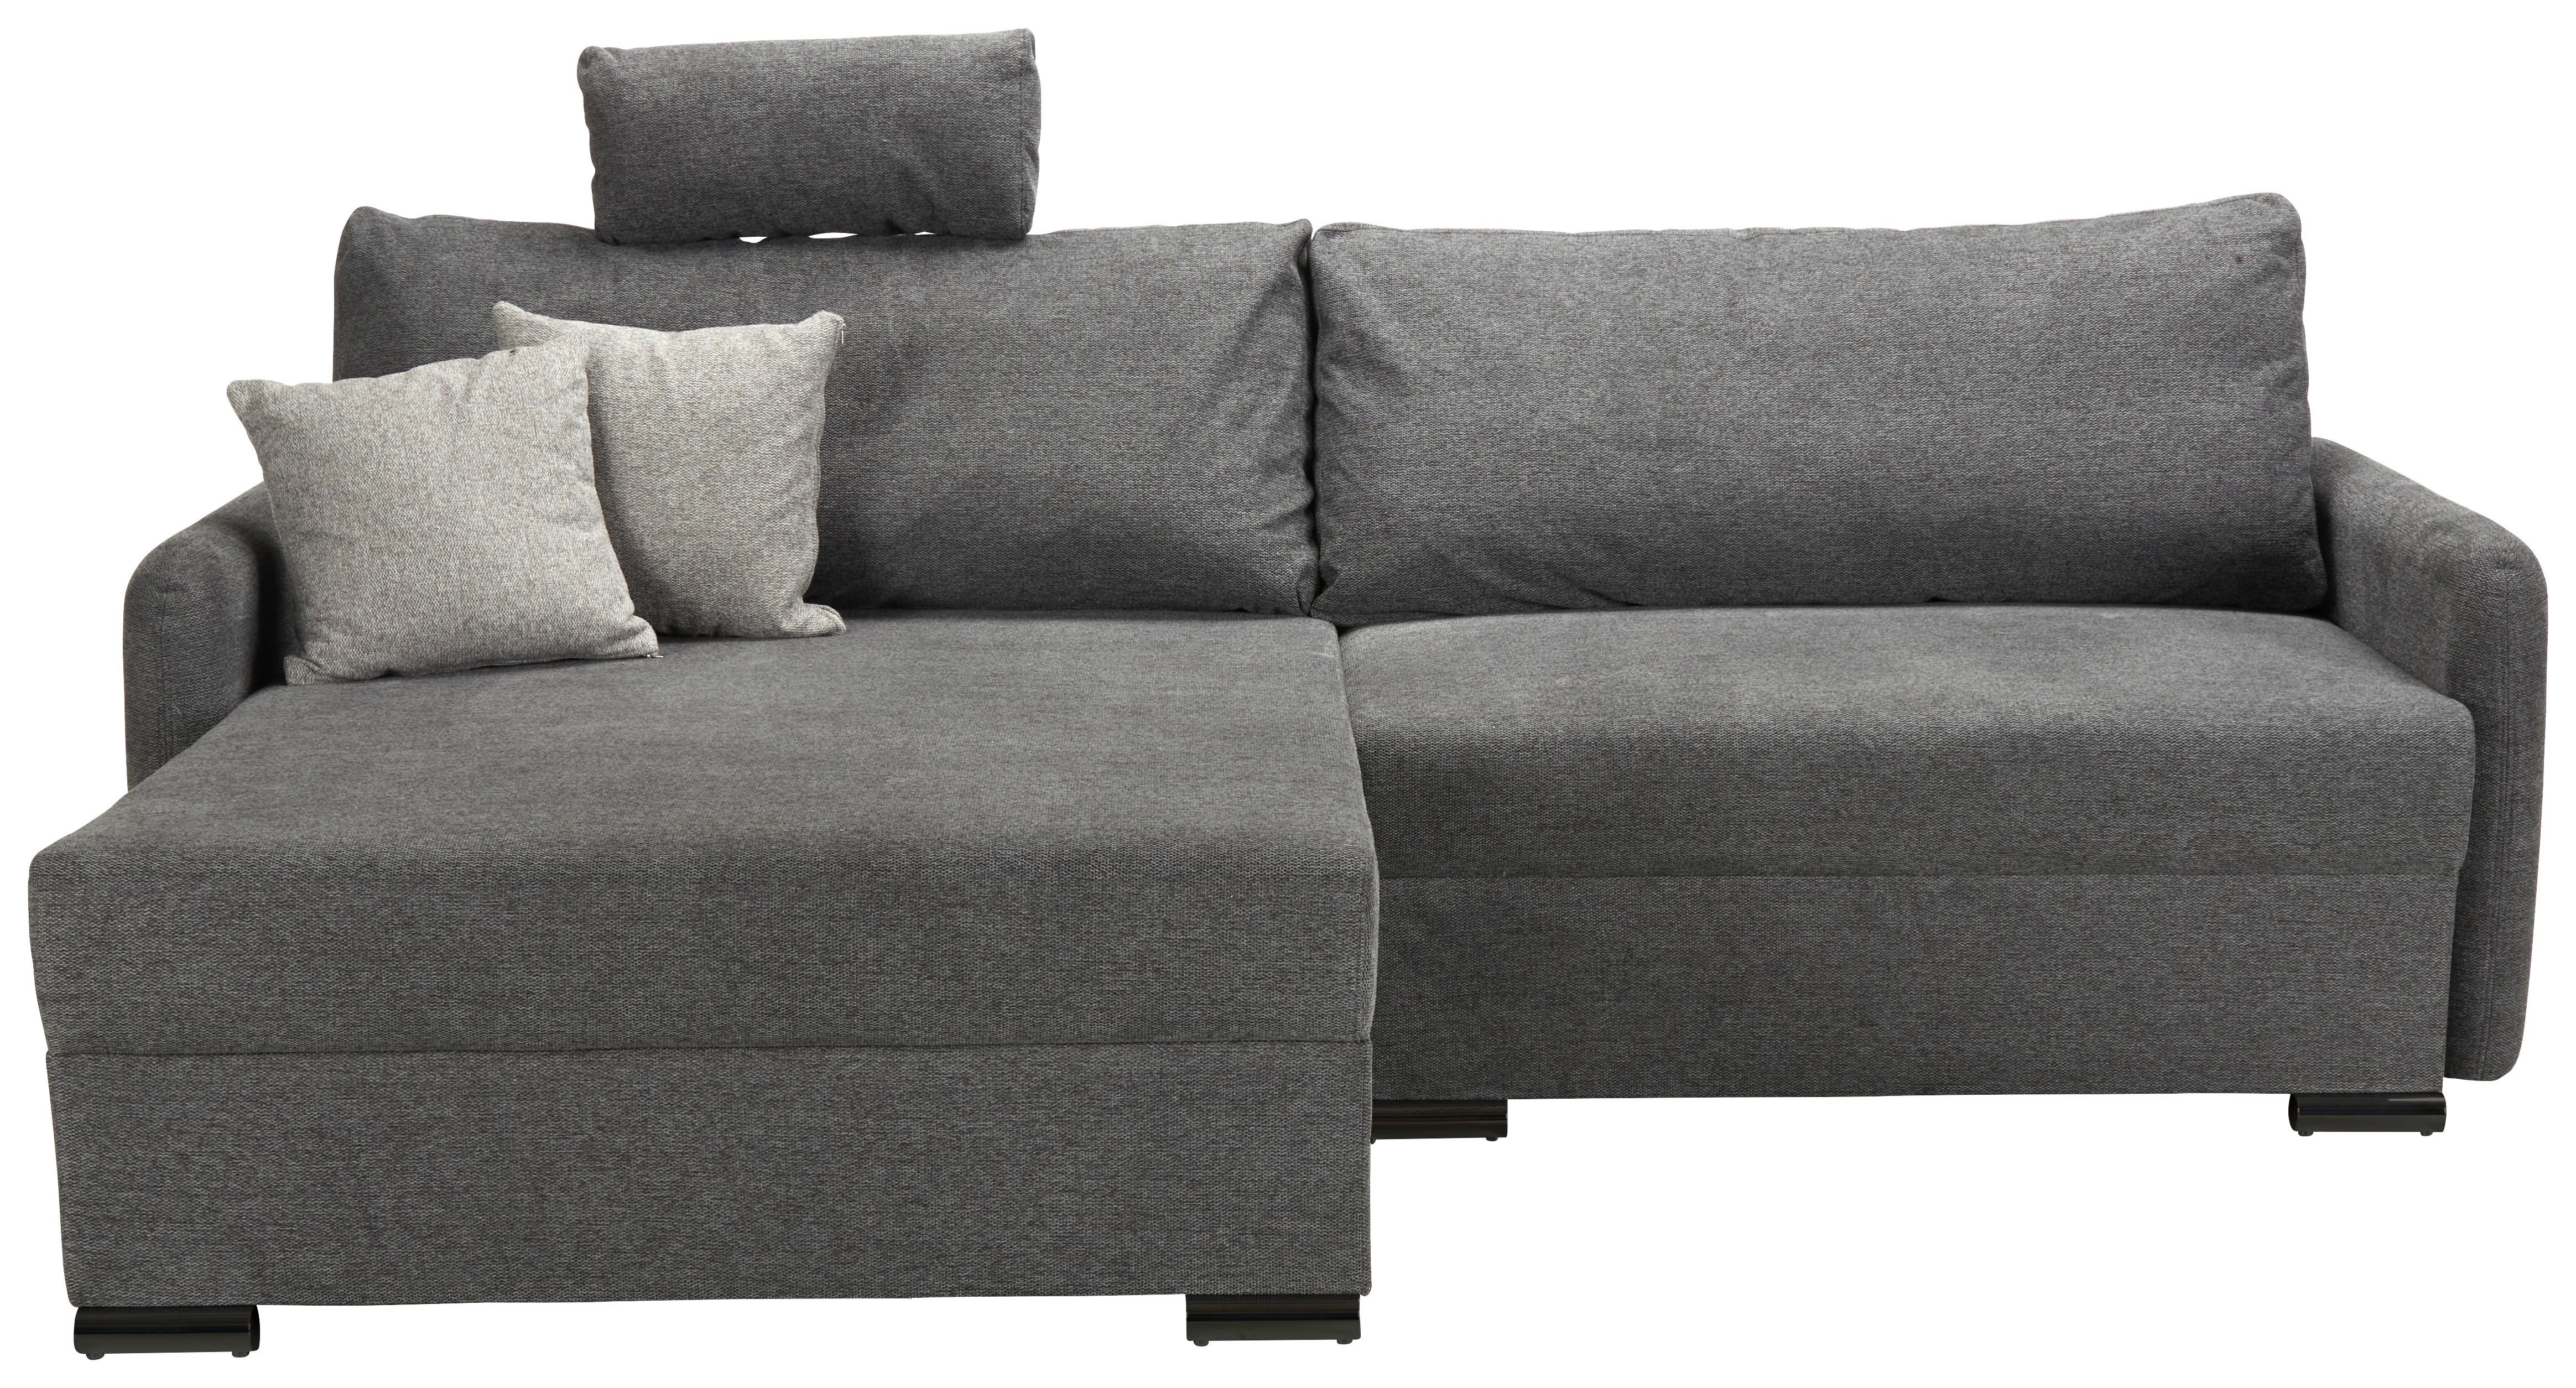 Sedežna Garnitura Lyon C, Temno Siva, Ležišče, Predal - temno siva/črna, Moderno, umetna masa/tekstil (242/102/167cm) - Modern Living